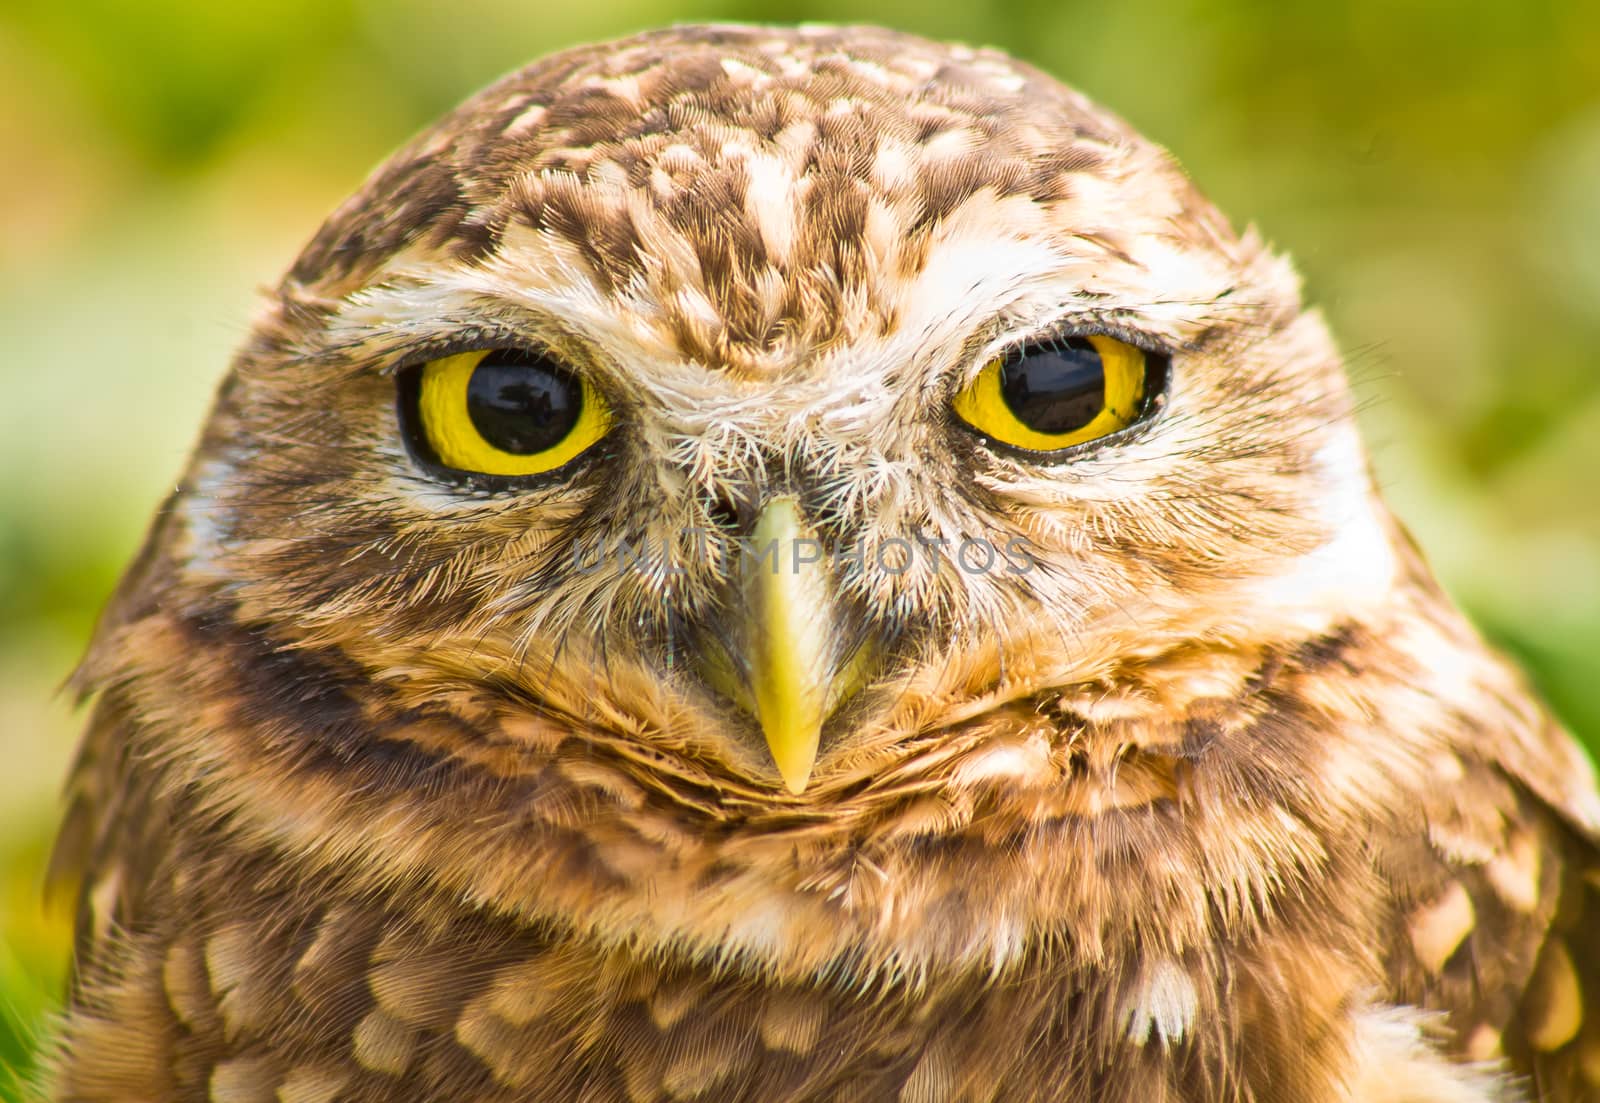 Burrowing owl by gigiobbr